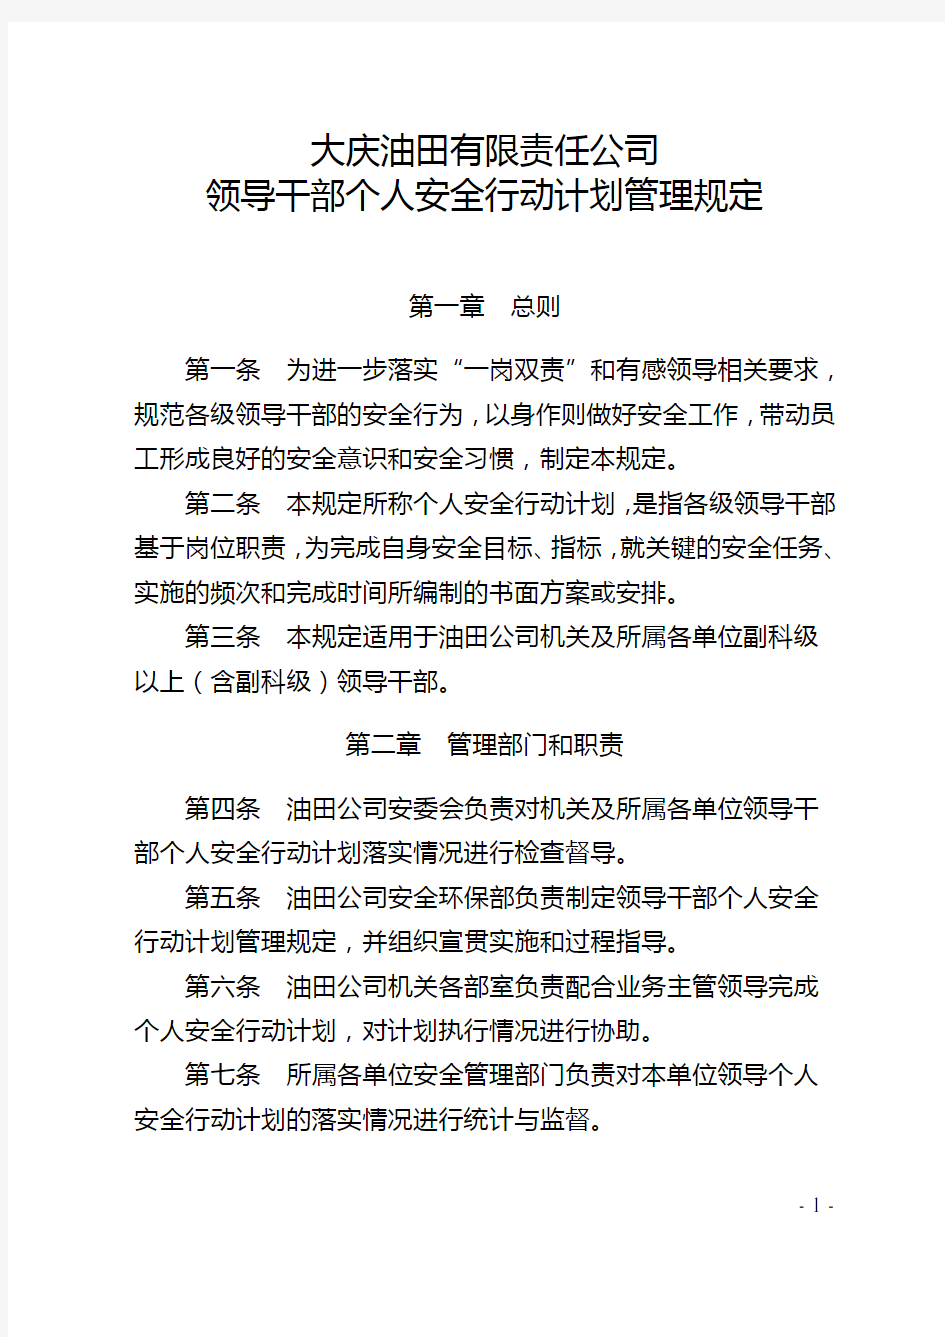 大庆油田公司领导干部个人安全行动计划管理规定